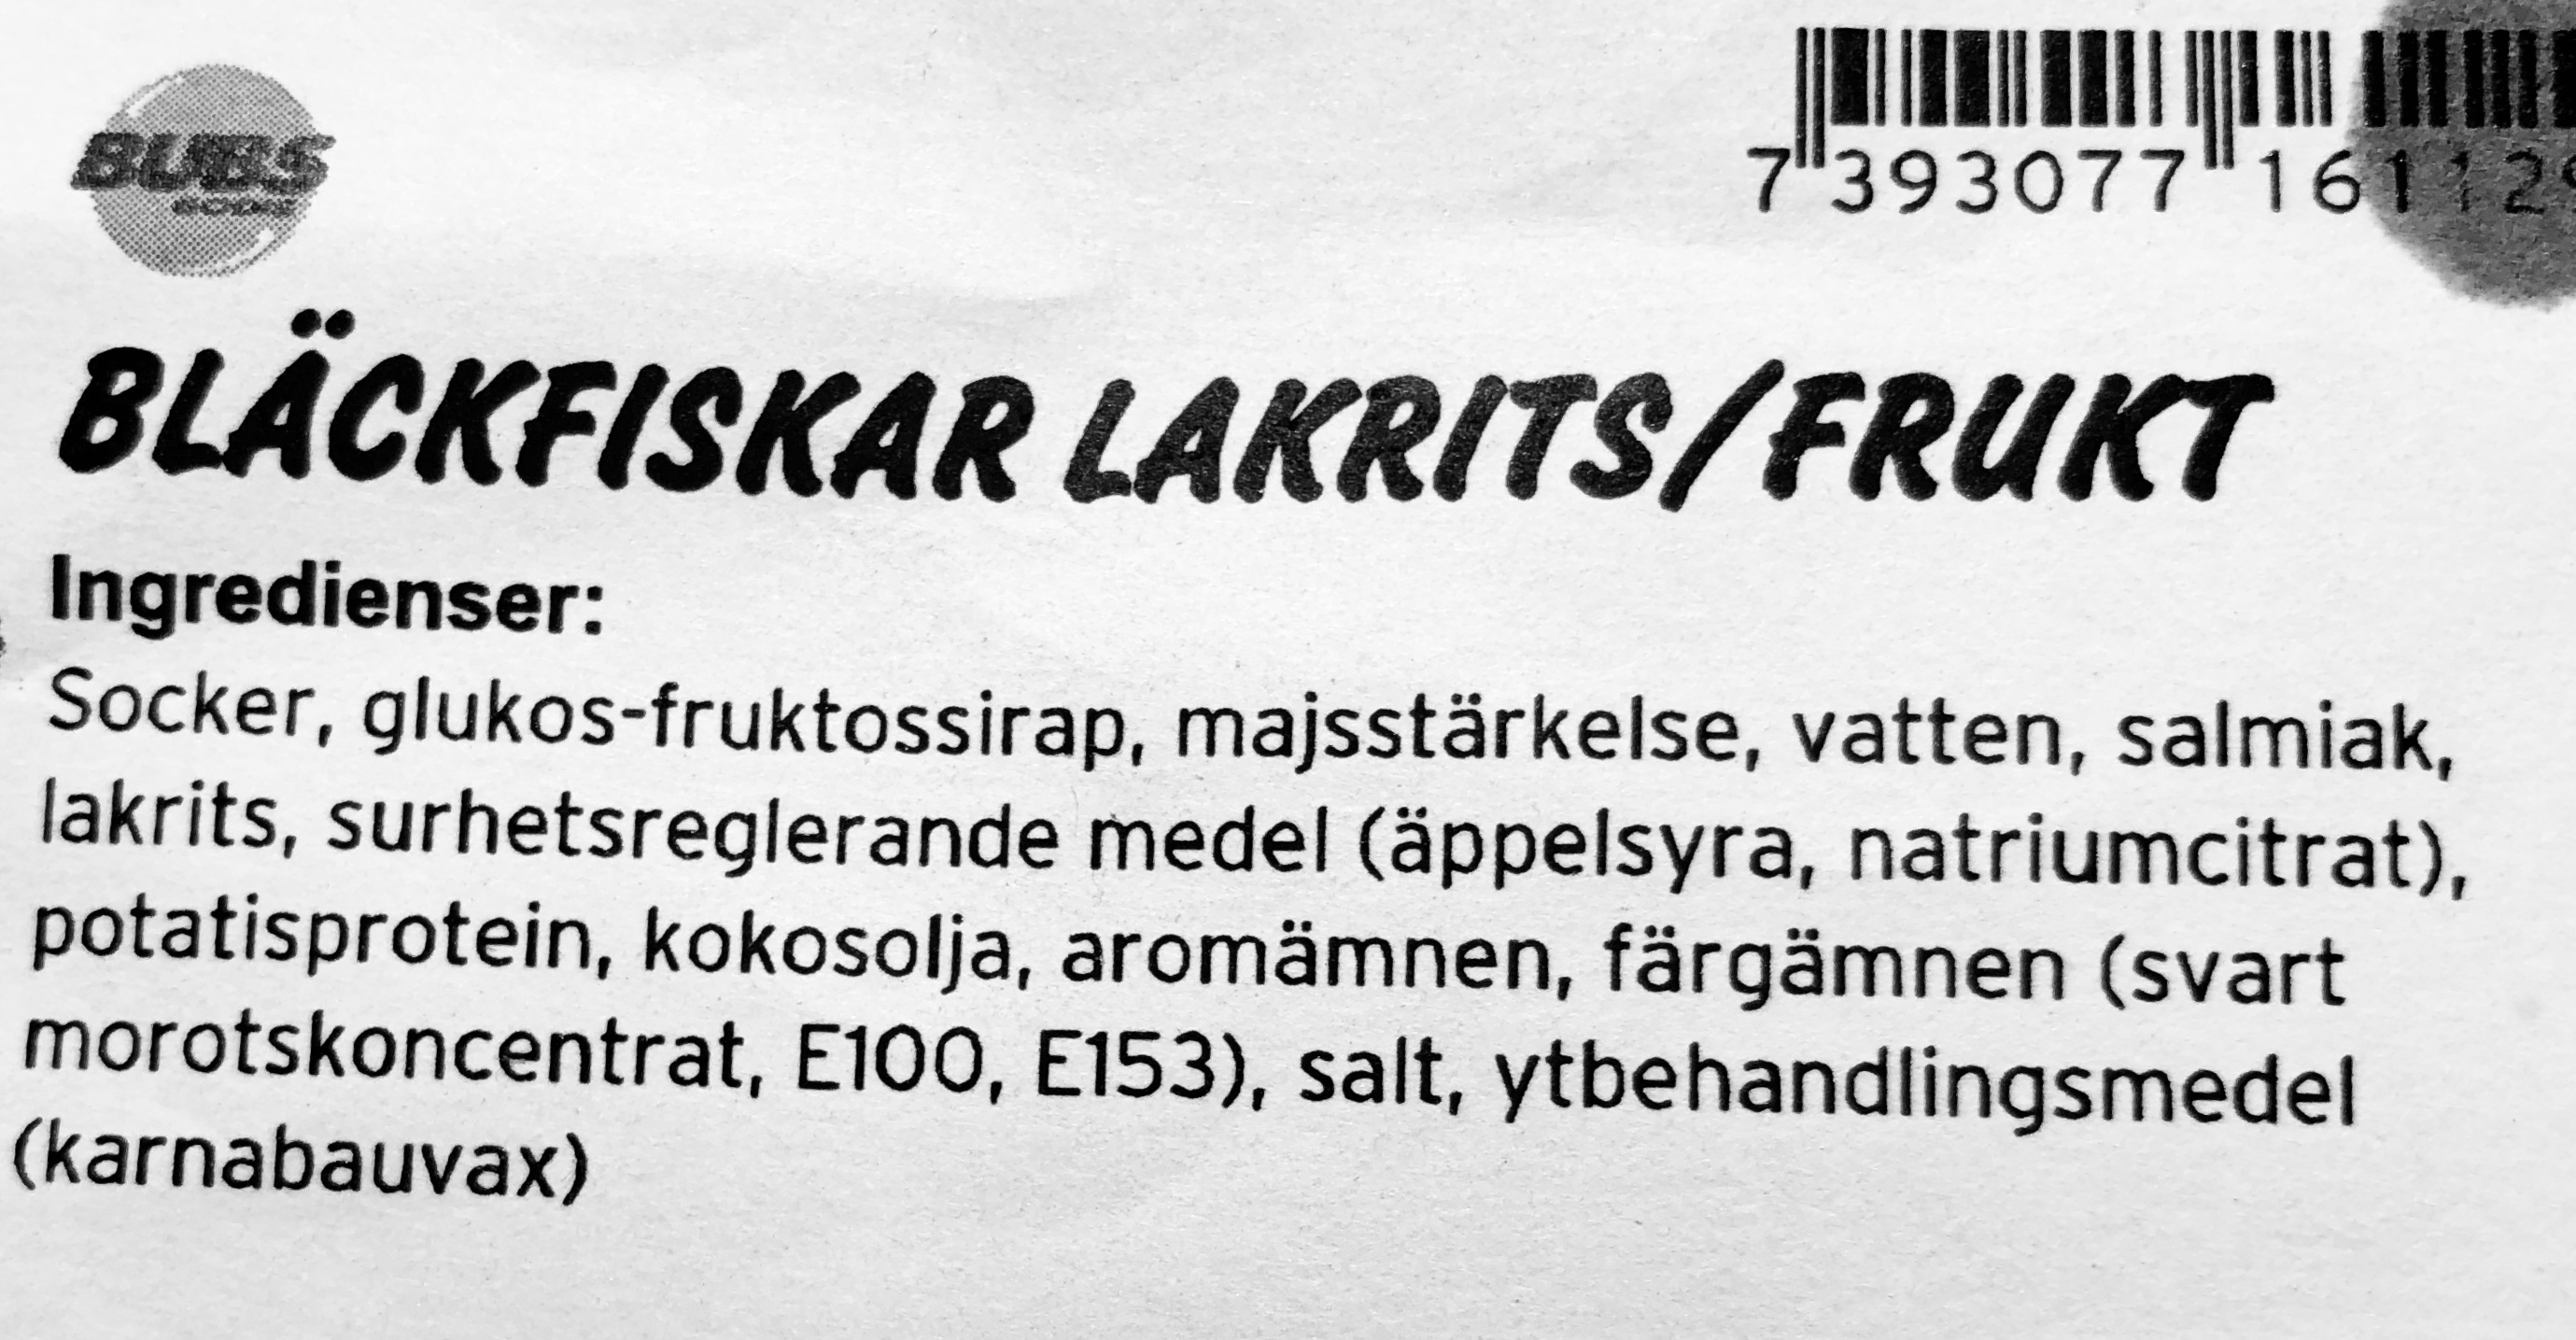 Bläckfiskar lakrits/frukt